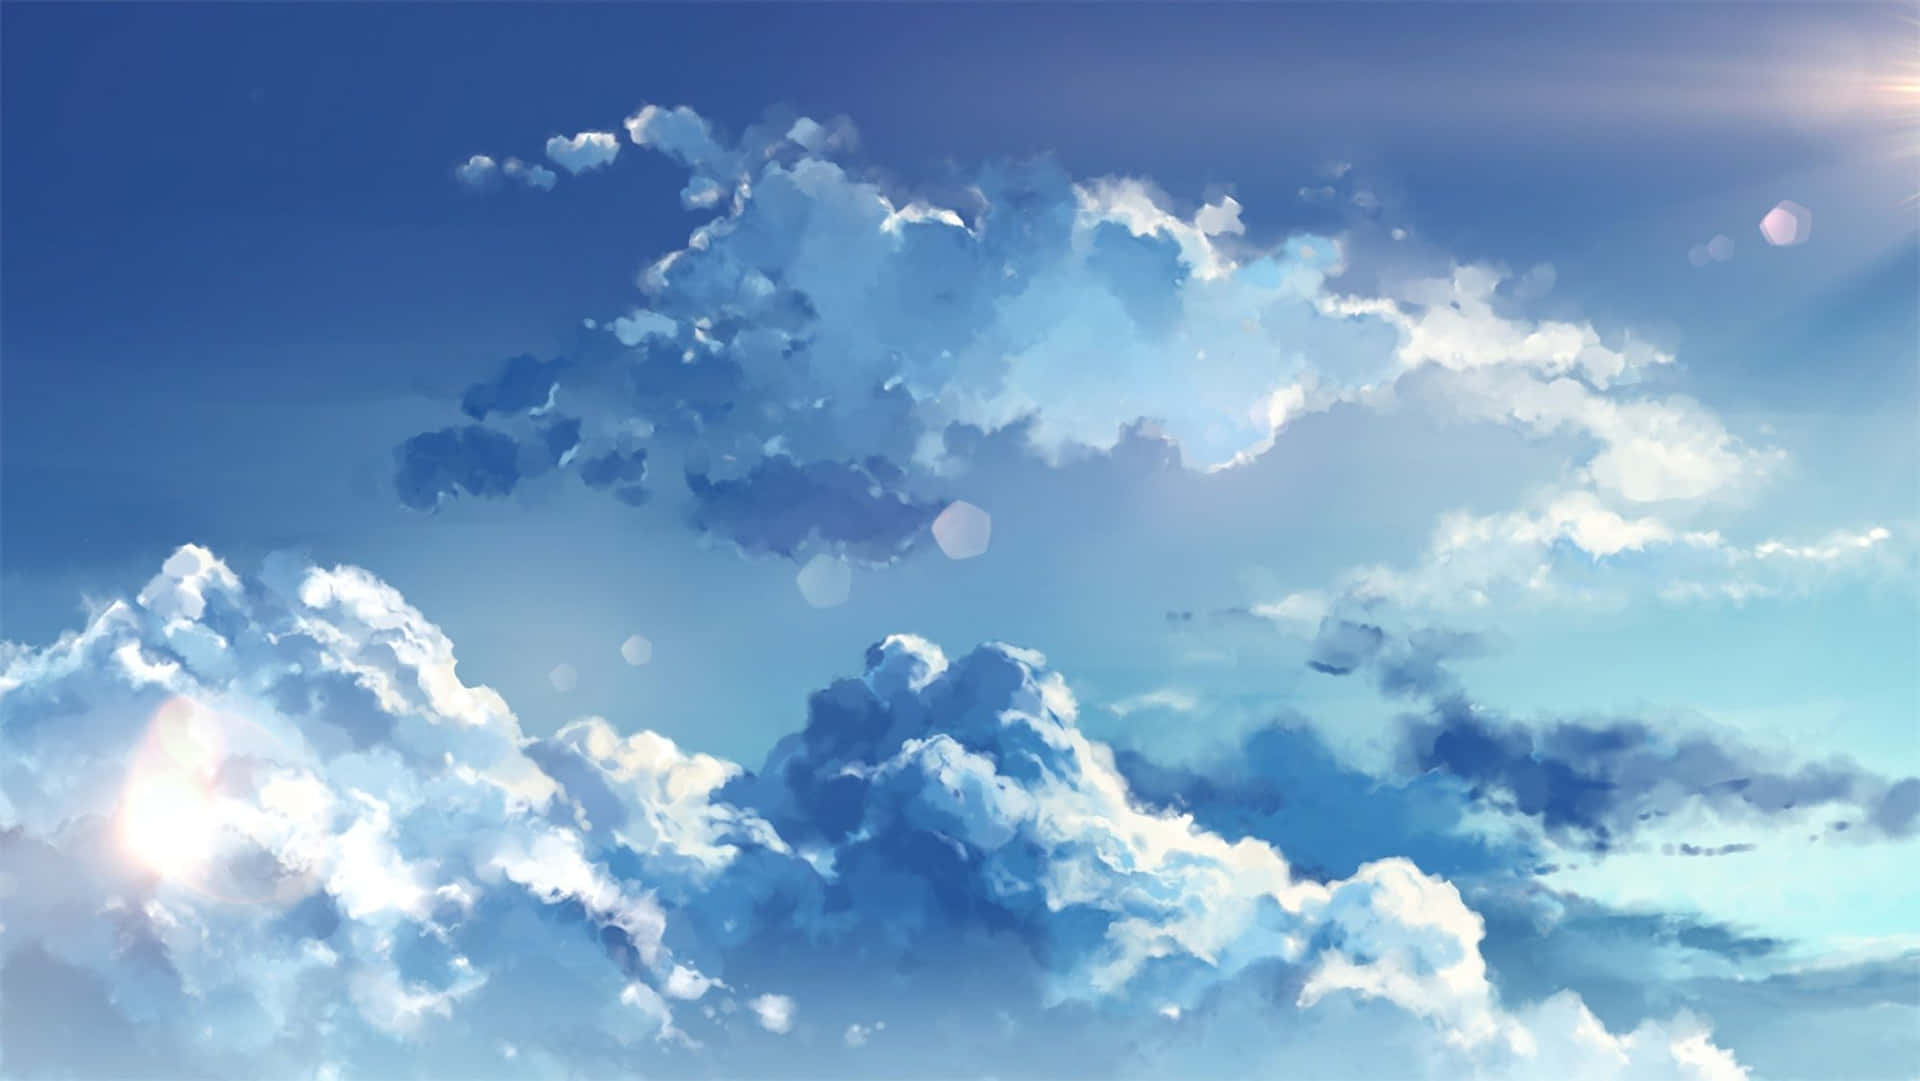 Anime Sky In A Serene Scene